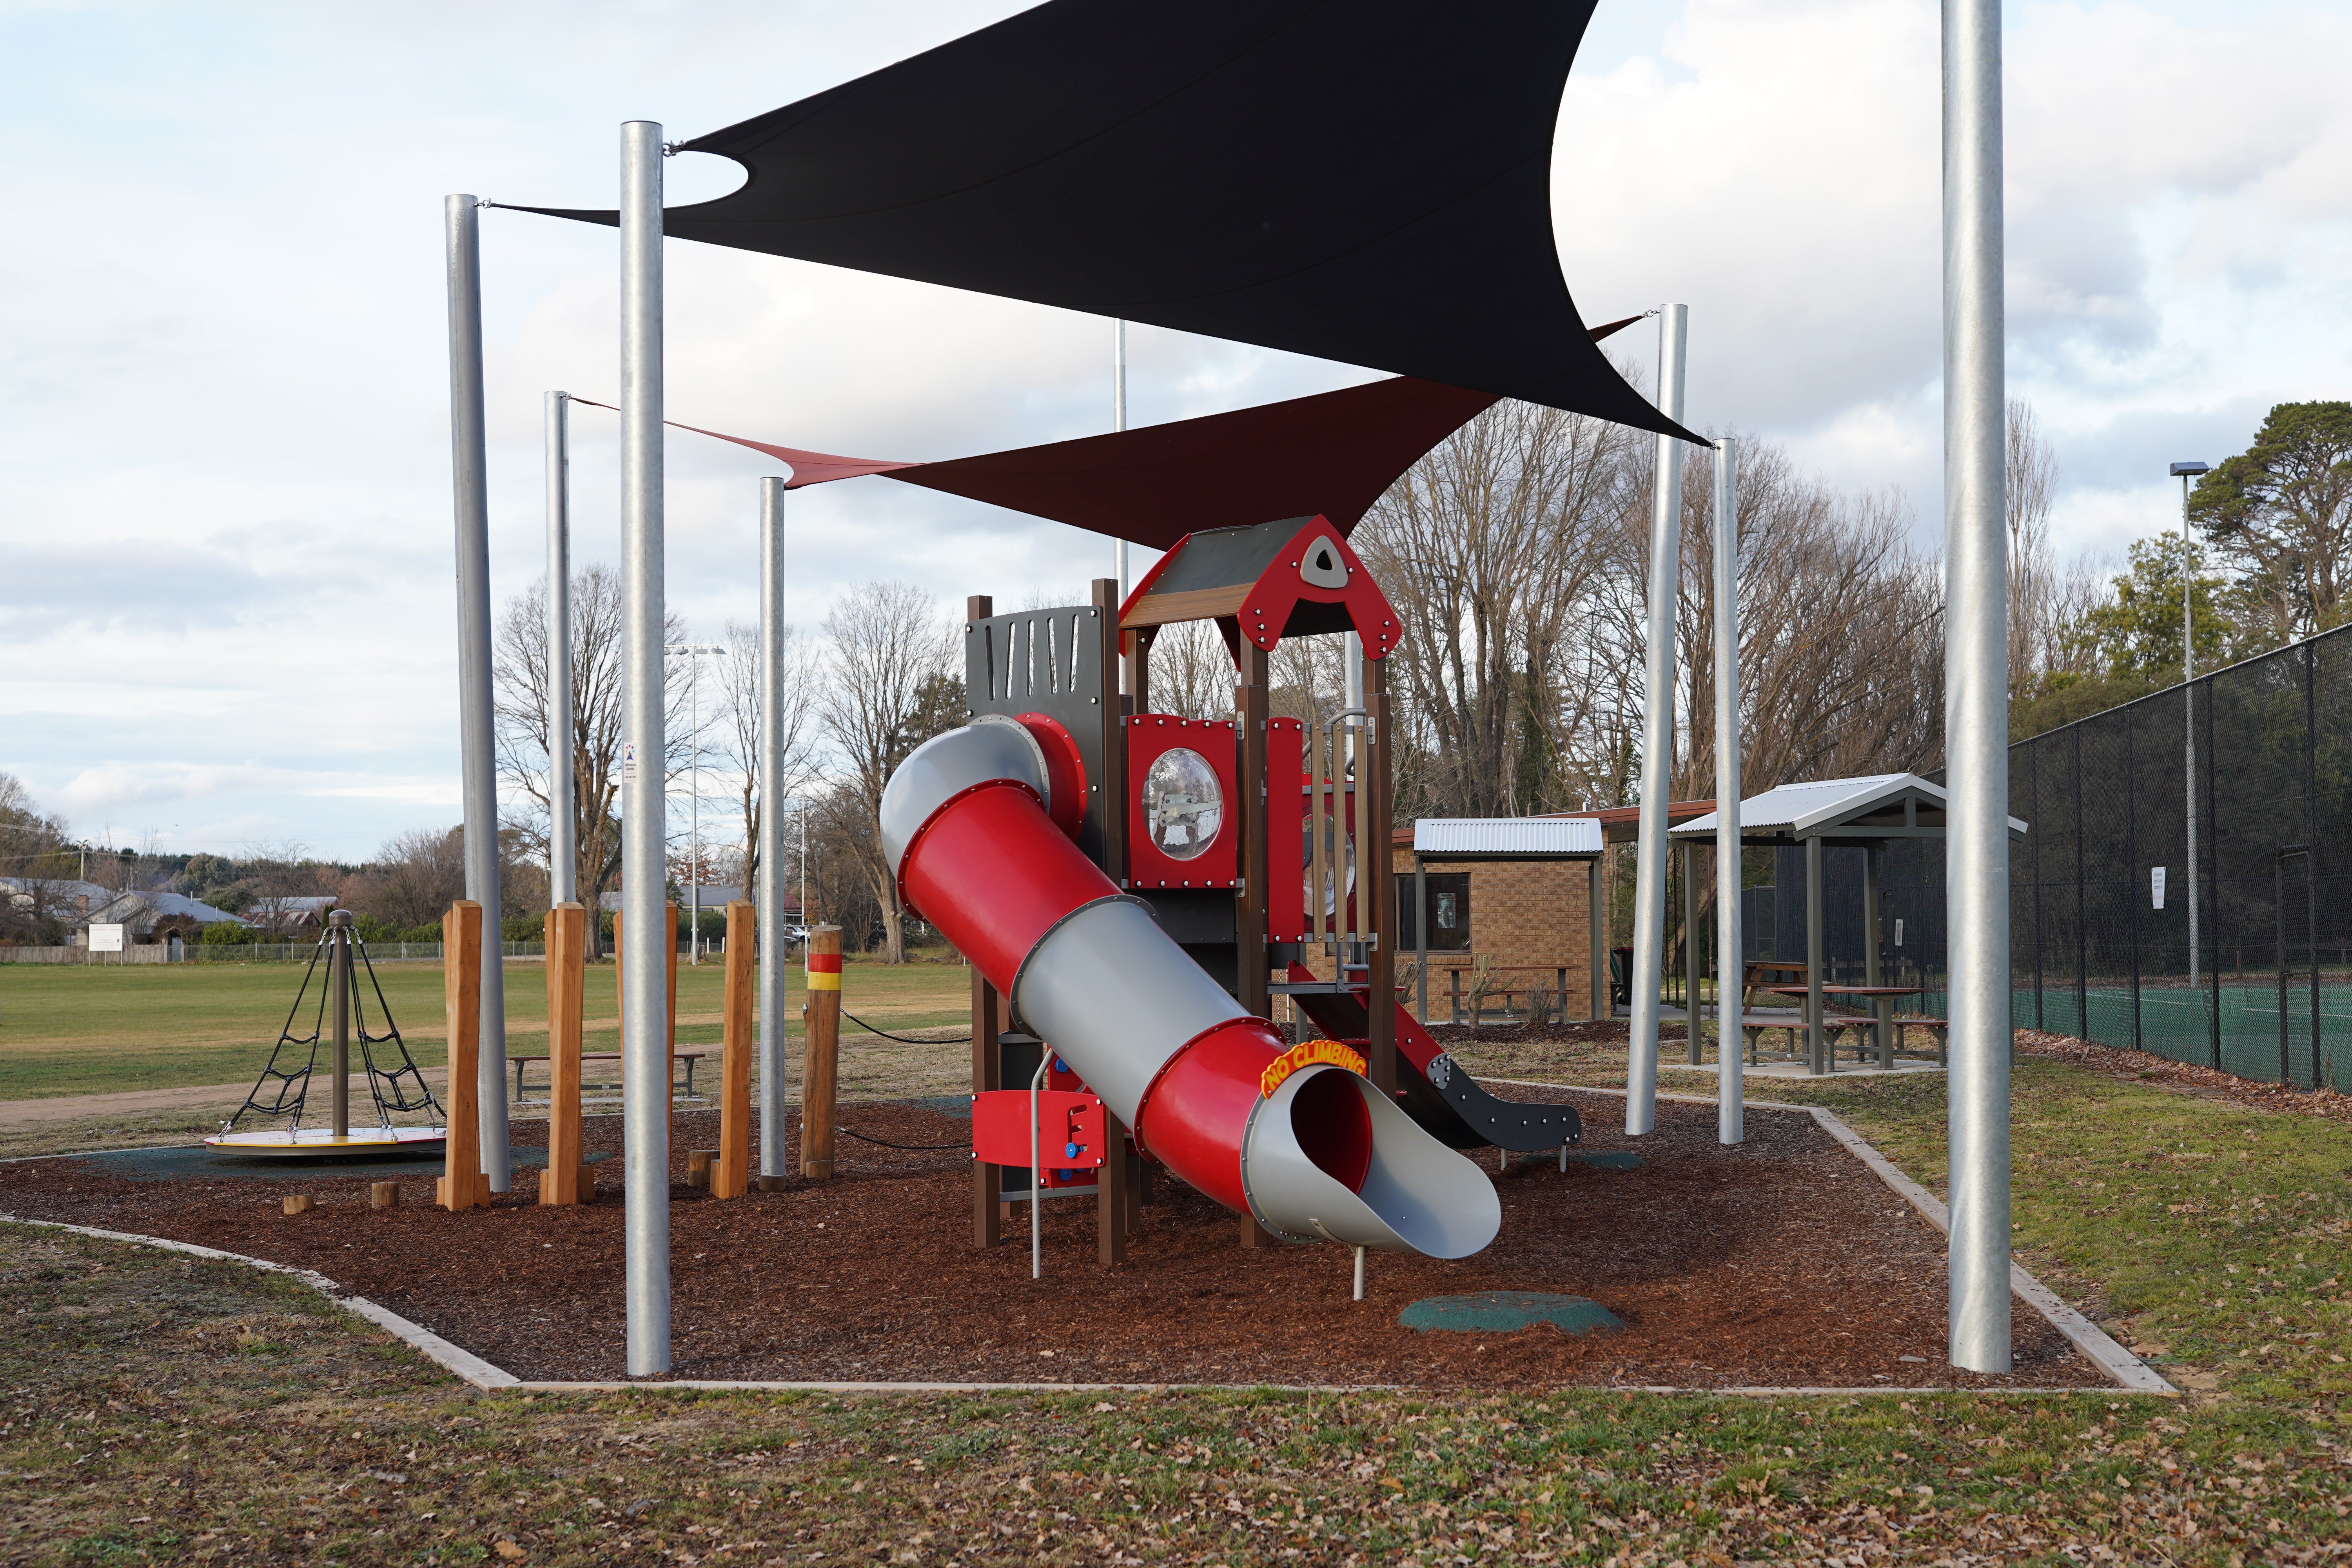 Braidwood Recreation Grounds and Playground - Accommodation Yamba